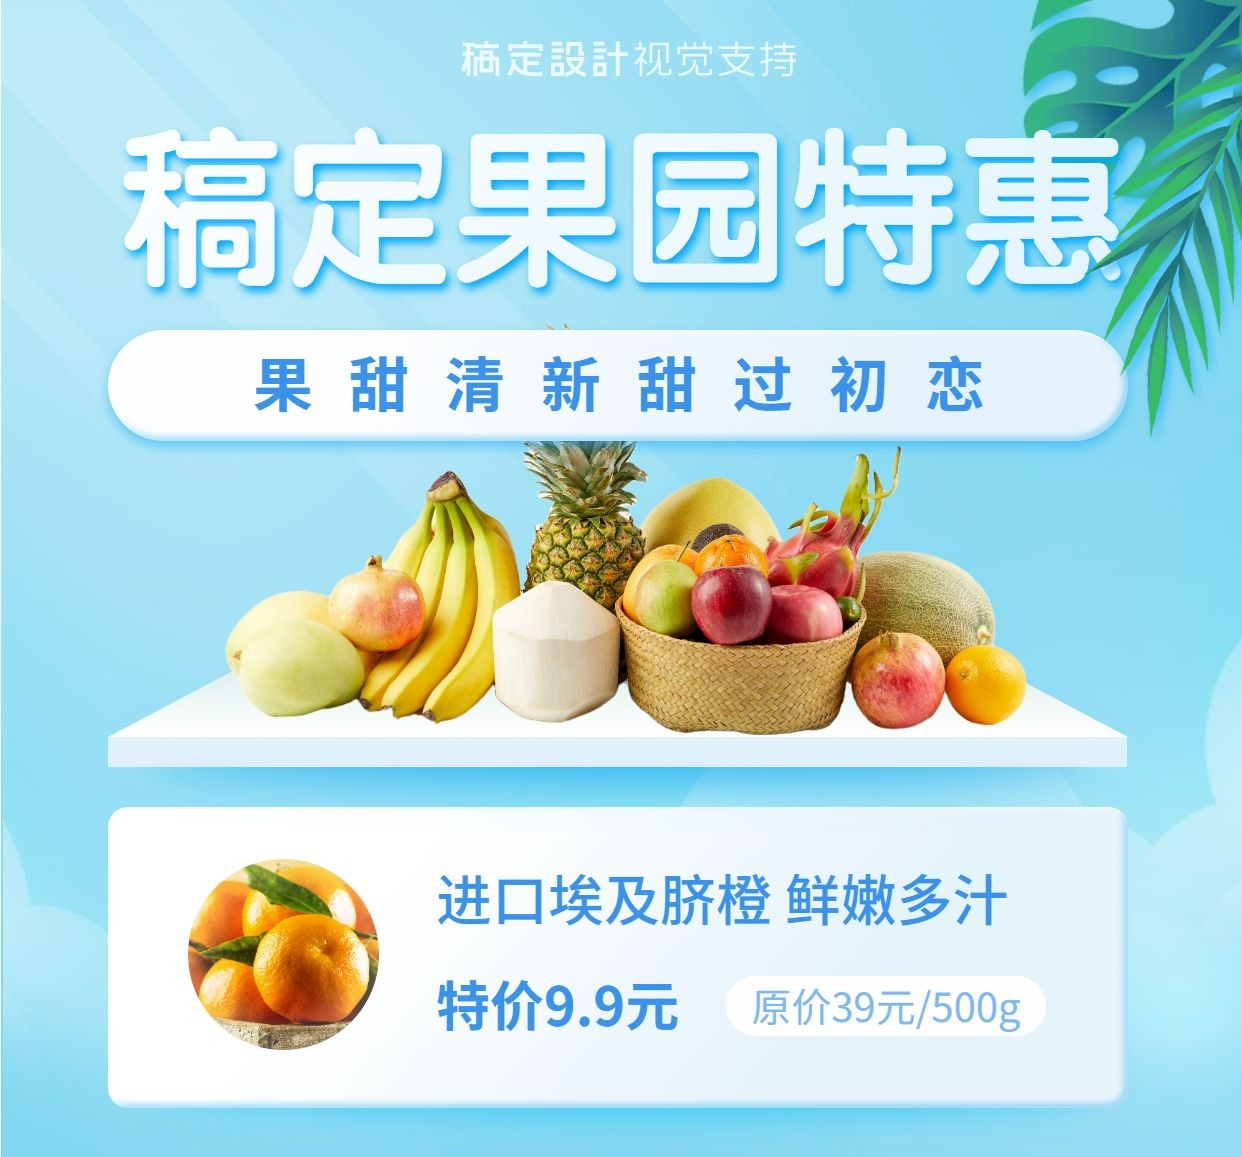 产品展示水果价目表营销海报预览效果